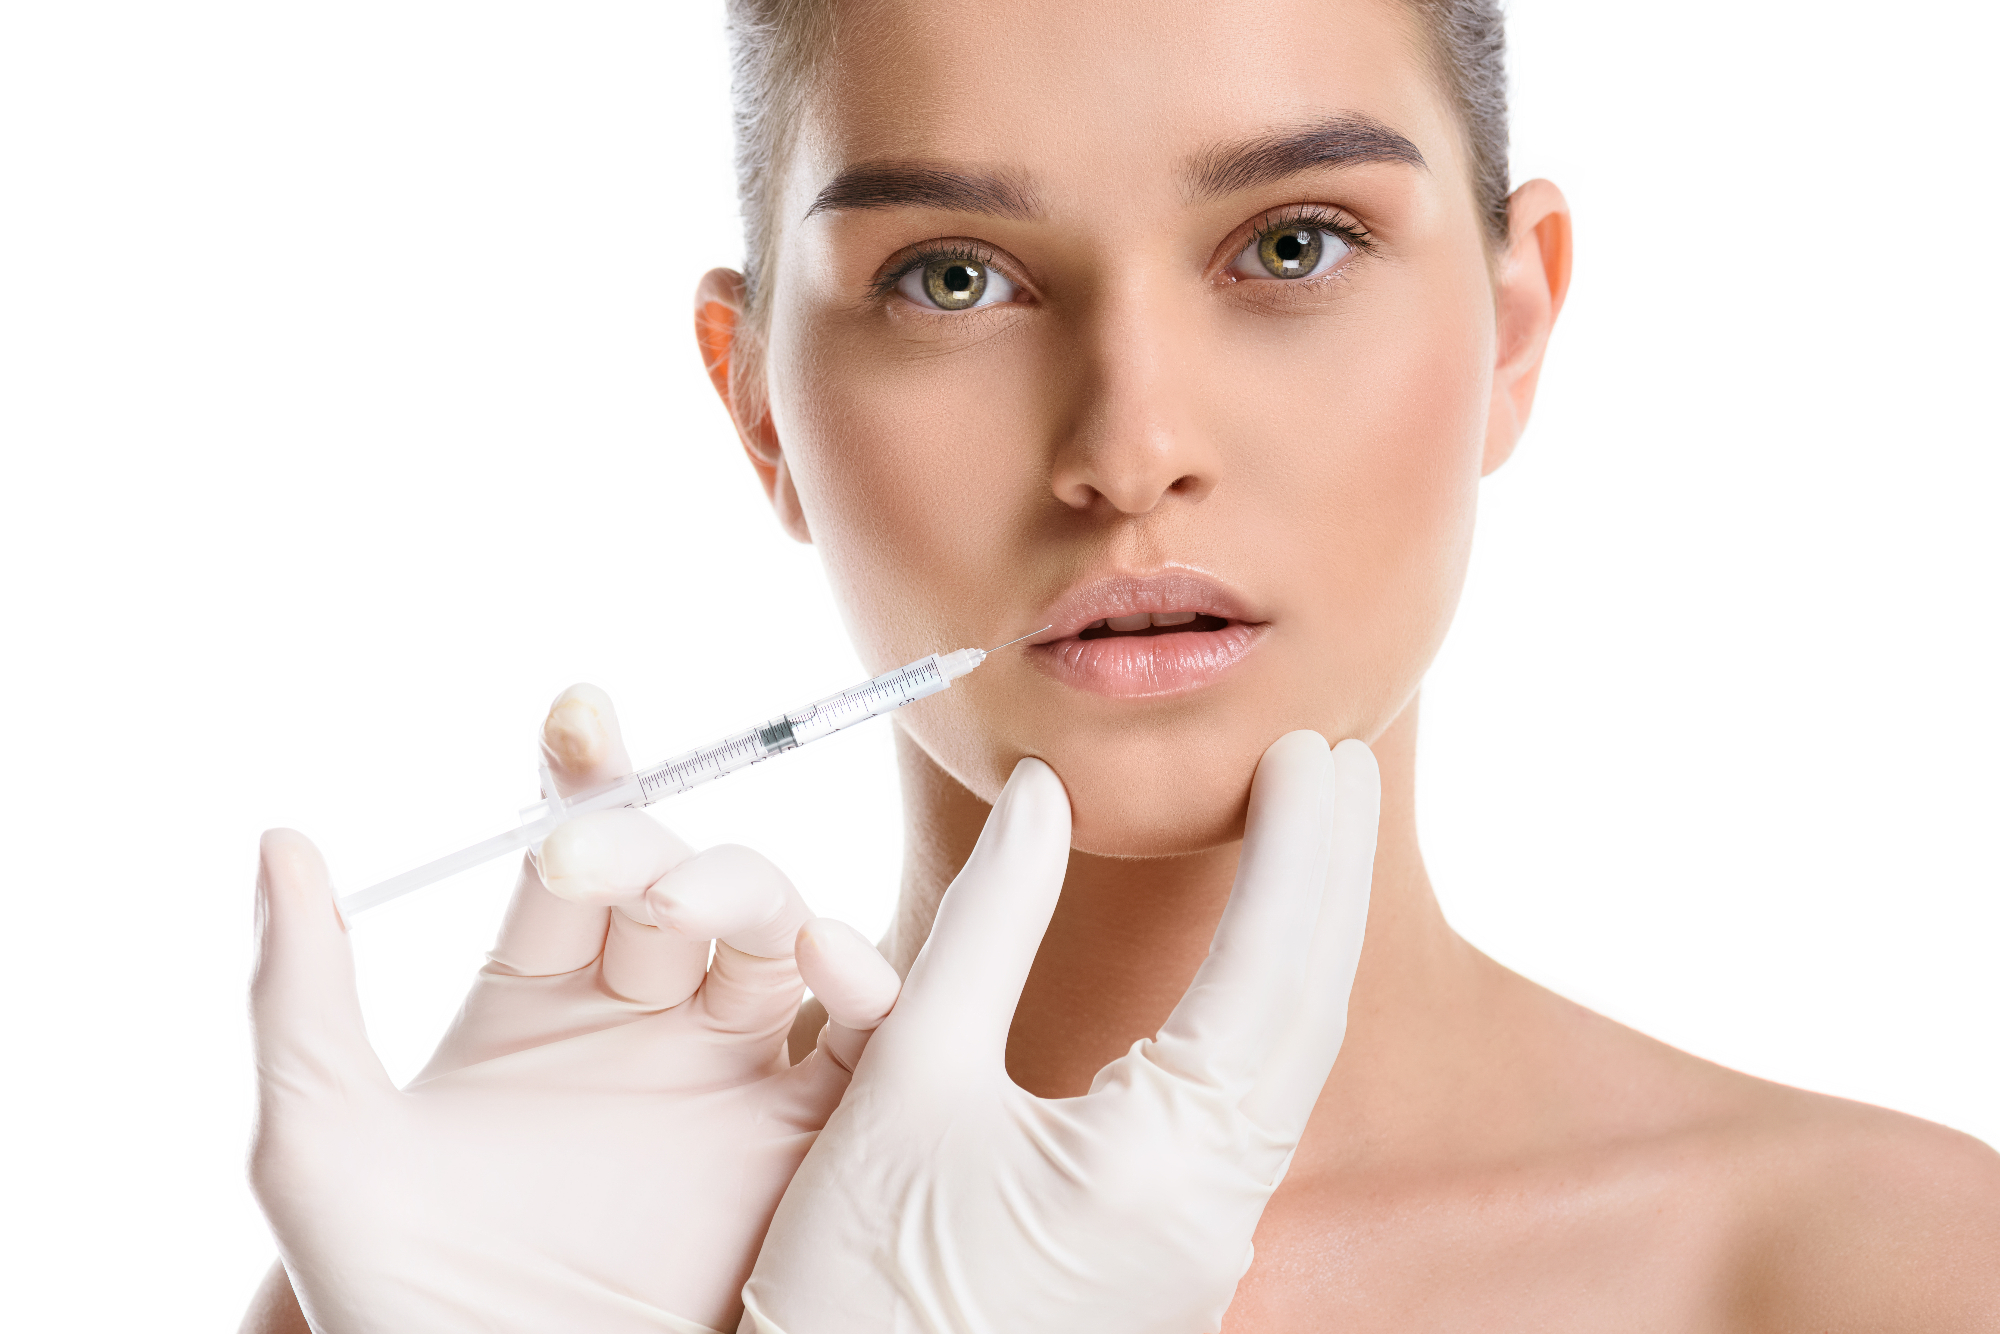 Mnogo ljudi še danes ne ve, da je botoks več kot zdravilo za pomlajevanje obraza